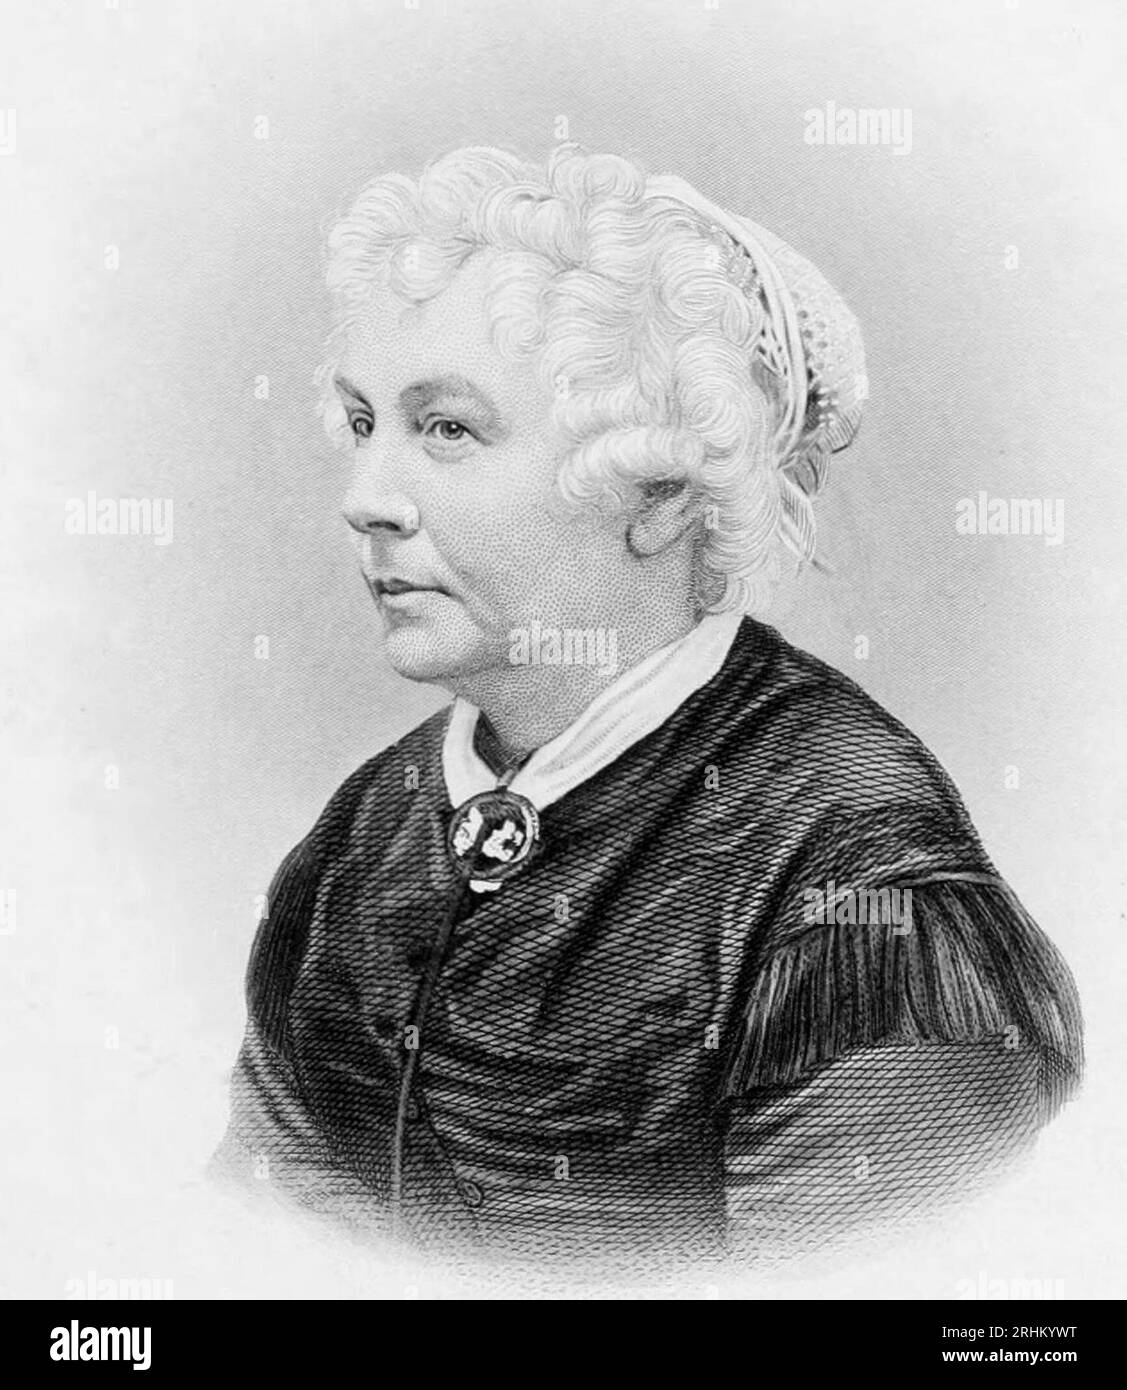 Elizabeth Cady Stanton (nata Cady; 12 novembre 1815 – 26 ottobre 1902) è stata una scrittrice e attivista statunitense, leader del movimento per i diritti delle donne negli Stati Uniti durante la metà del XIX secolo Foto Stock